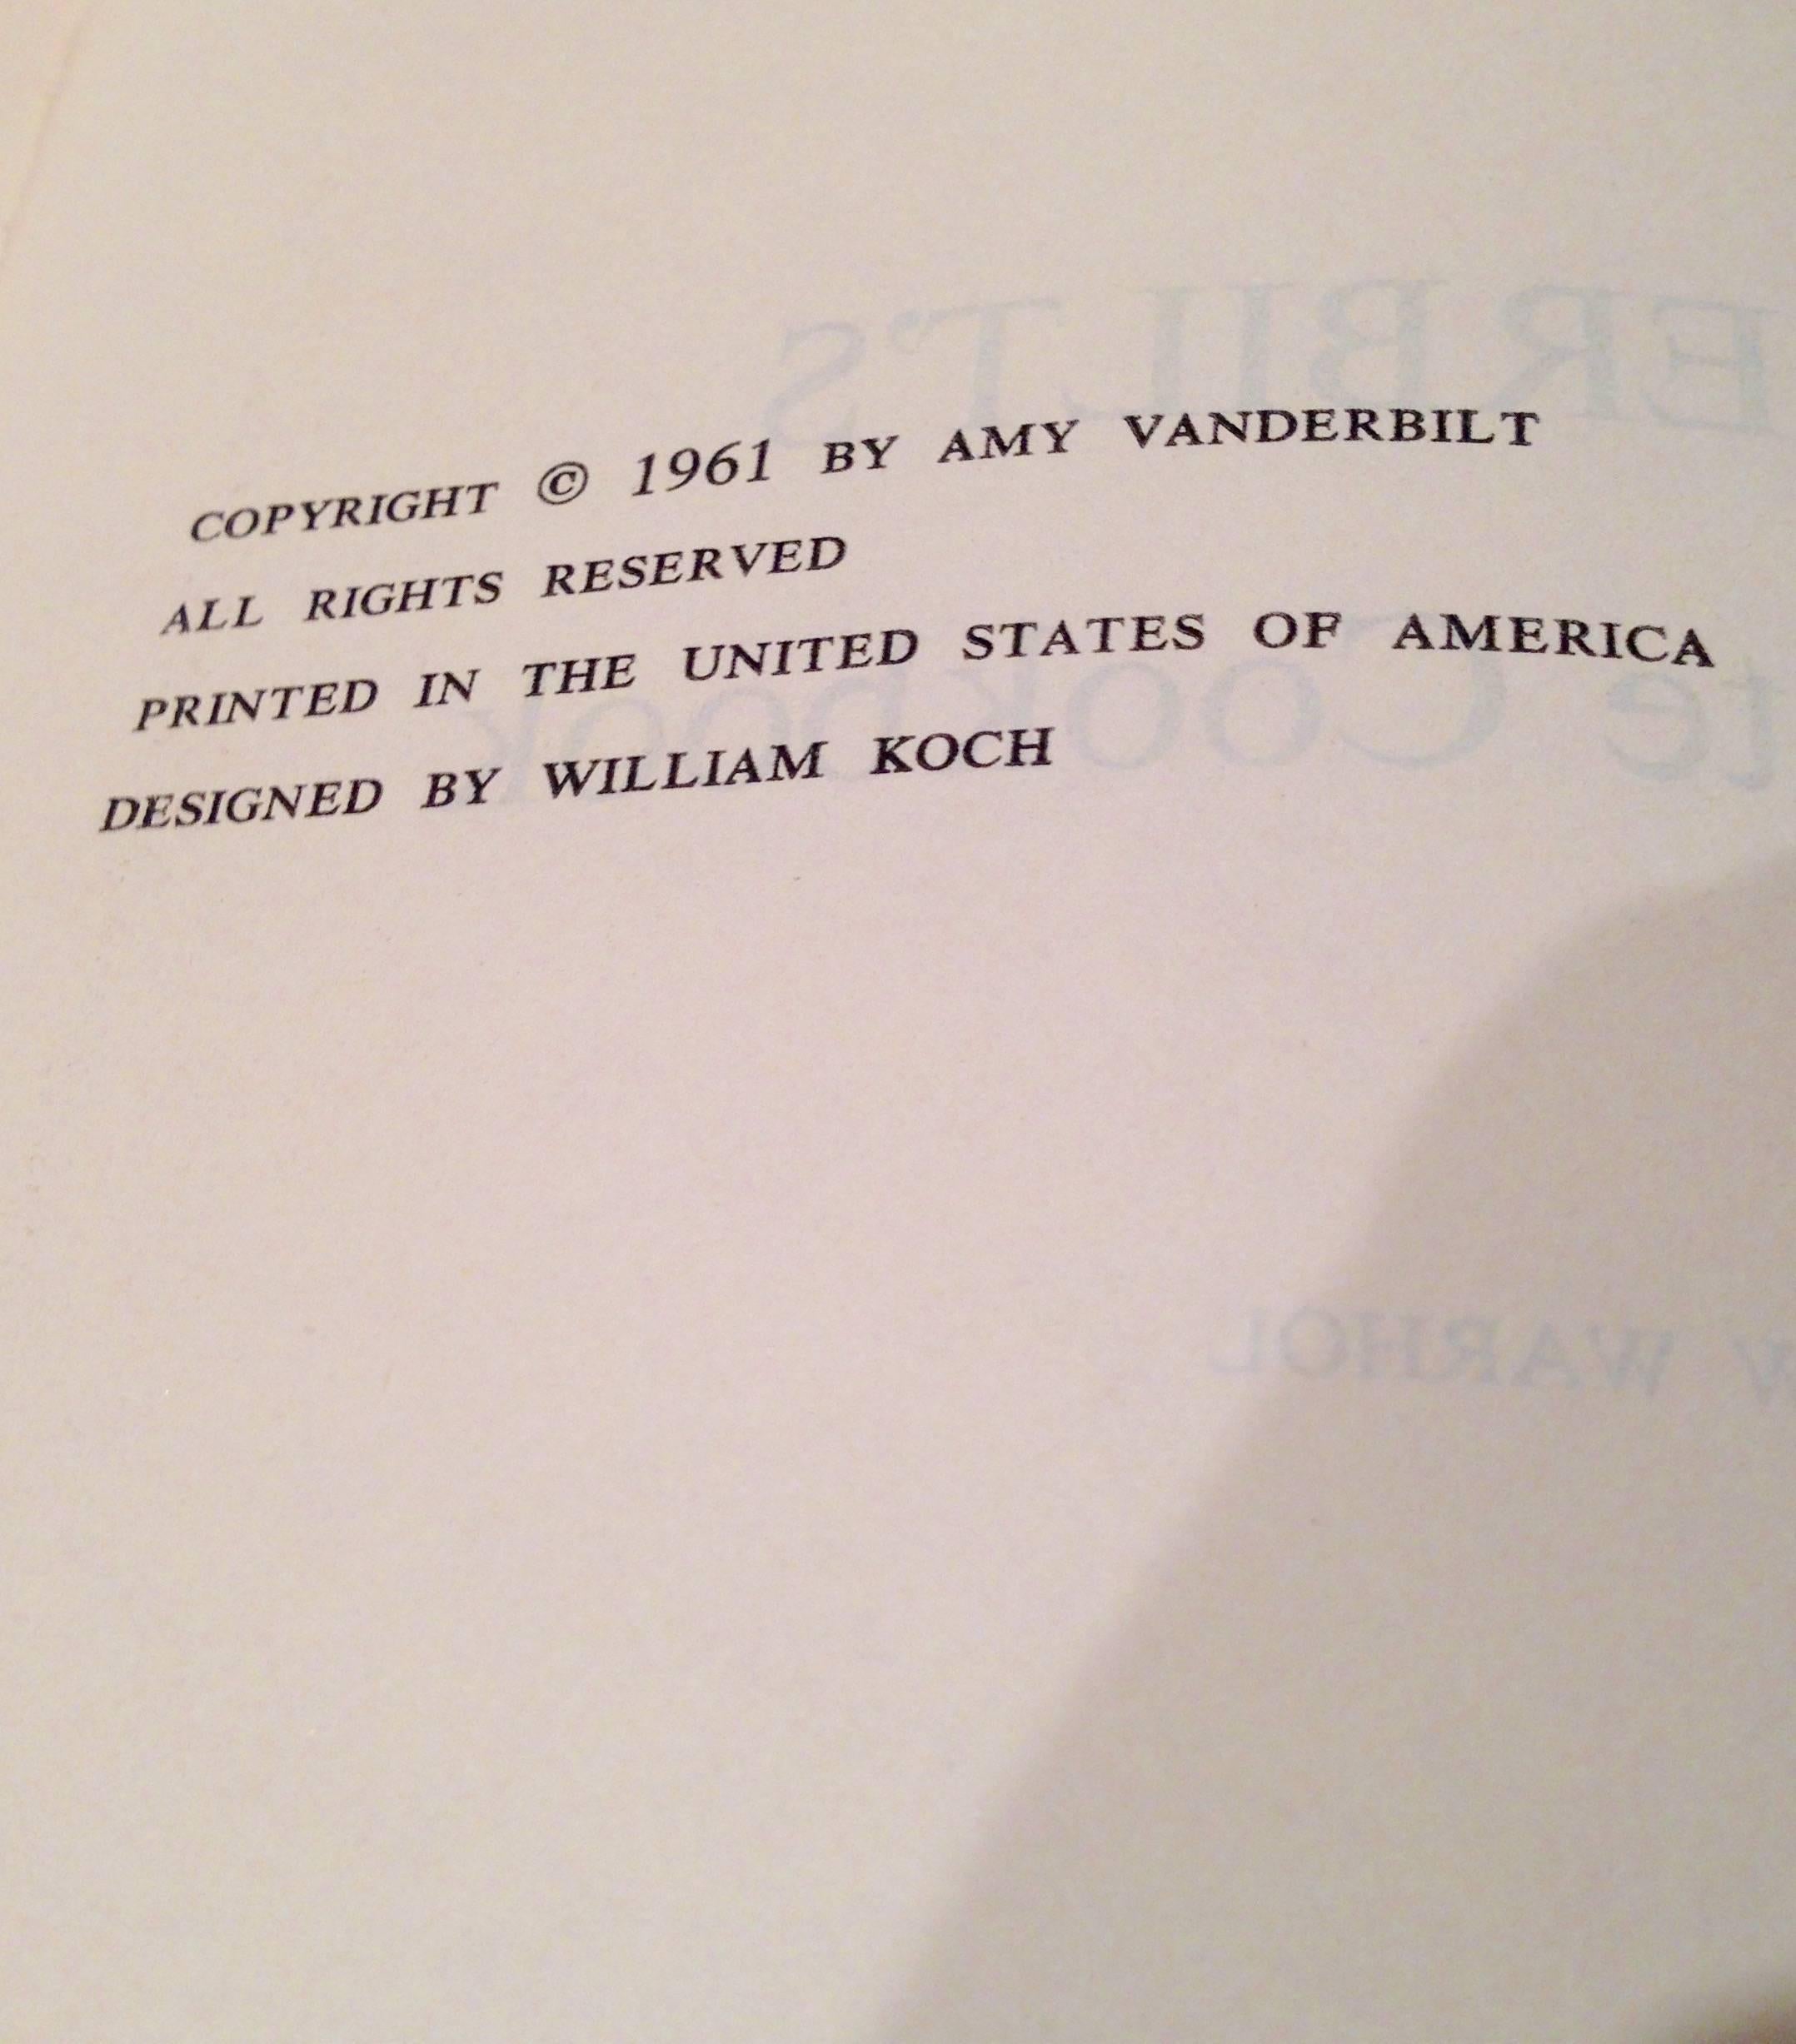 amy vanderbilt's complete cookbook 1961